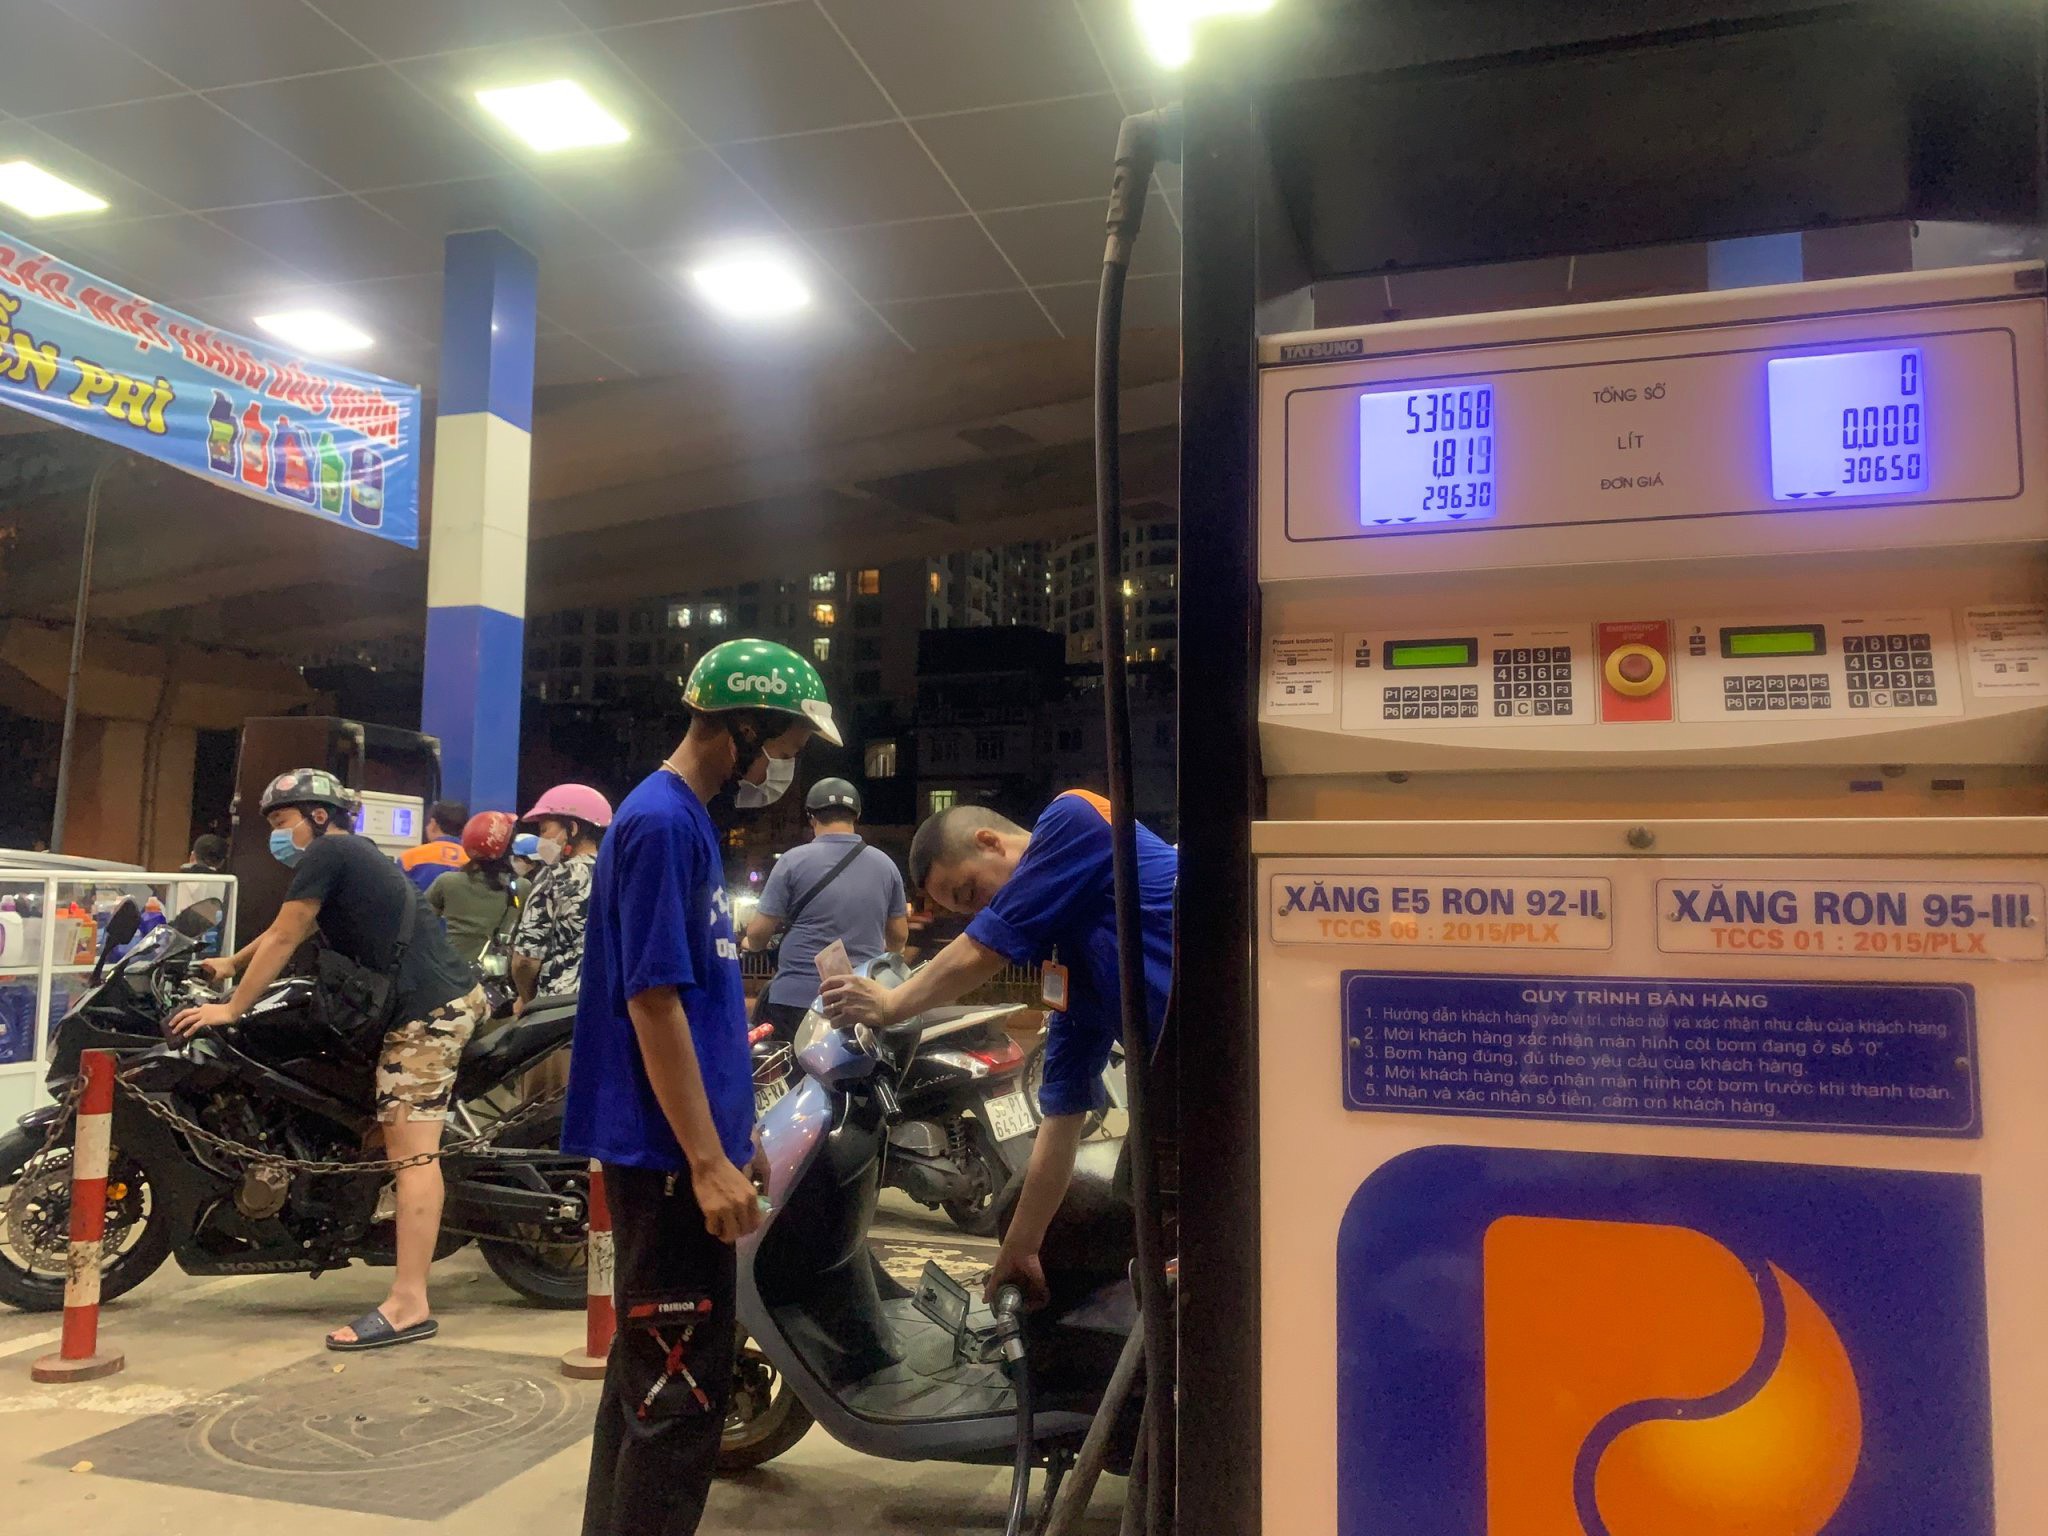 Anh Nguyễn Tiến T. (trú quận Nam Từ Liêm) cho biết qua thông tin báo chí được biết giá xăng có thể tăng lên mức 30.000 đồng/lít, nên trên đường tới công ty, anh tranh thủ bơm đầy bình xăng cho xe máy để đi lại trong những ngày tới.